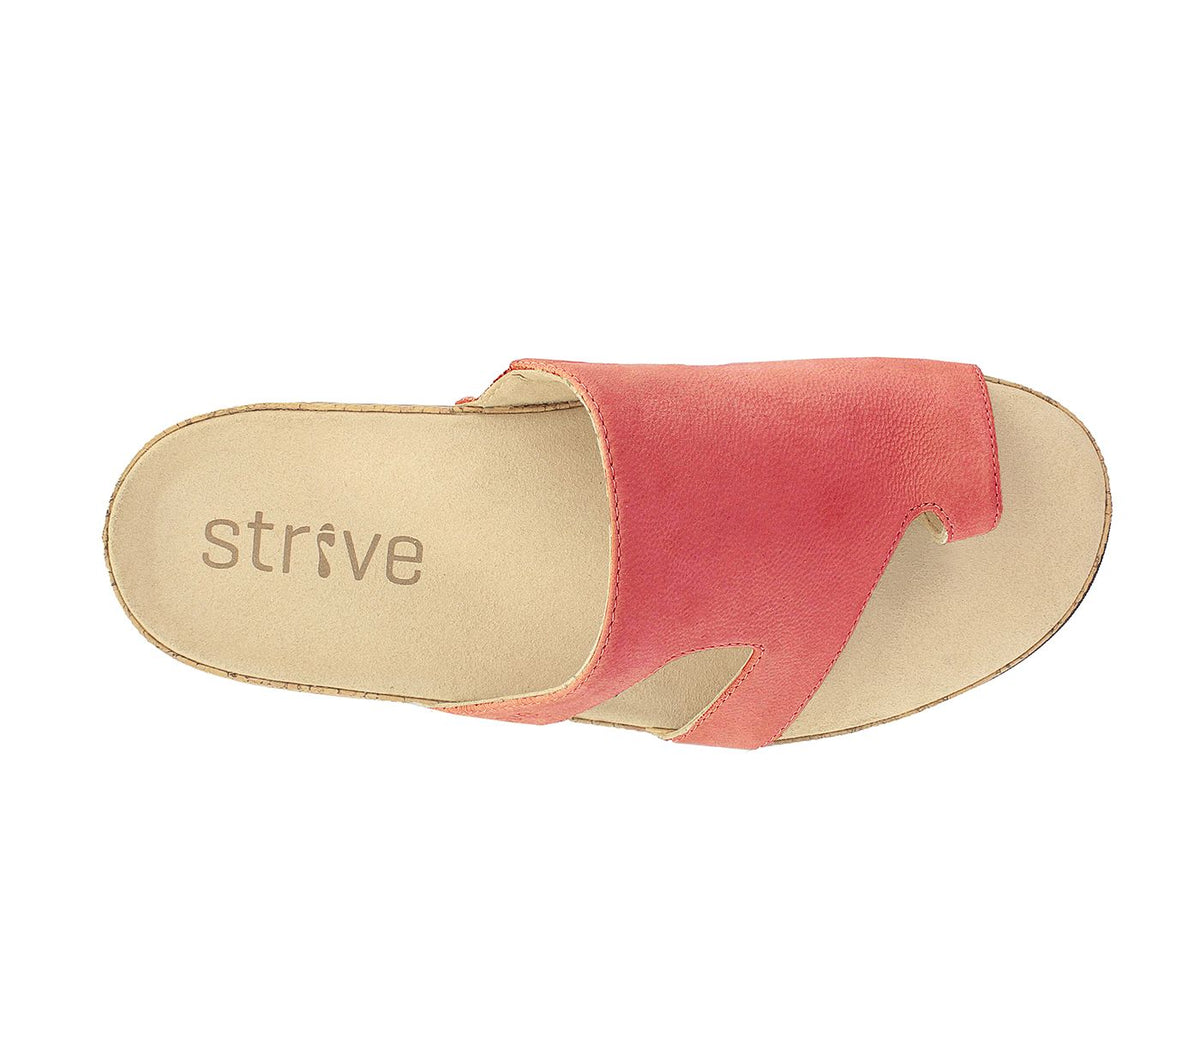 Strive - Savannah Blush Leather Sandal